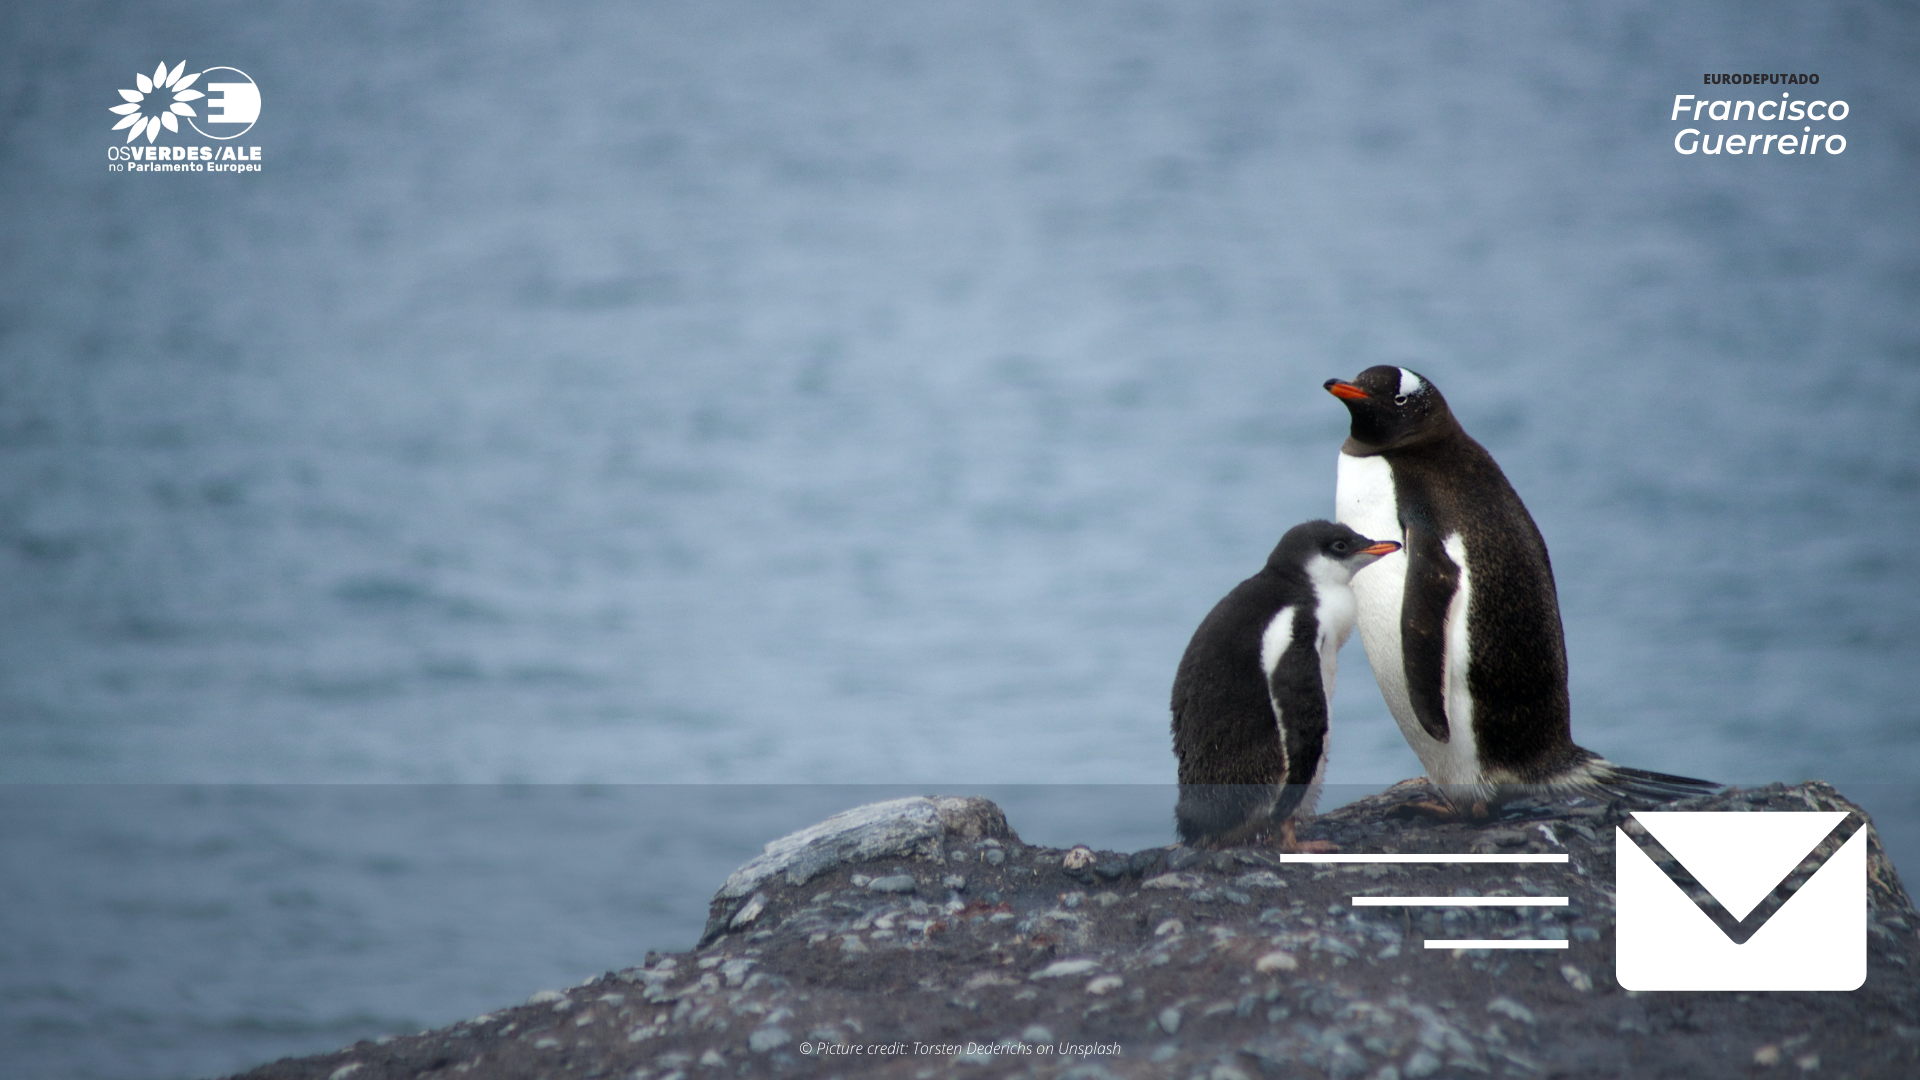 Áreas marinhas protegidas na Antártica preocupam Eurodeputados